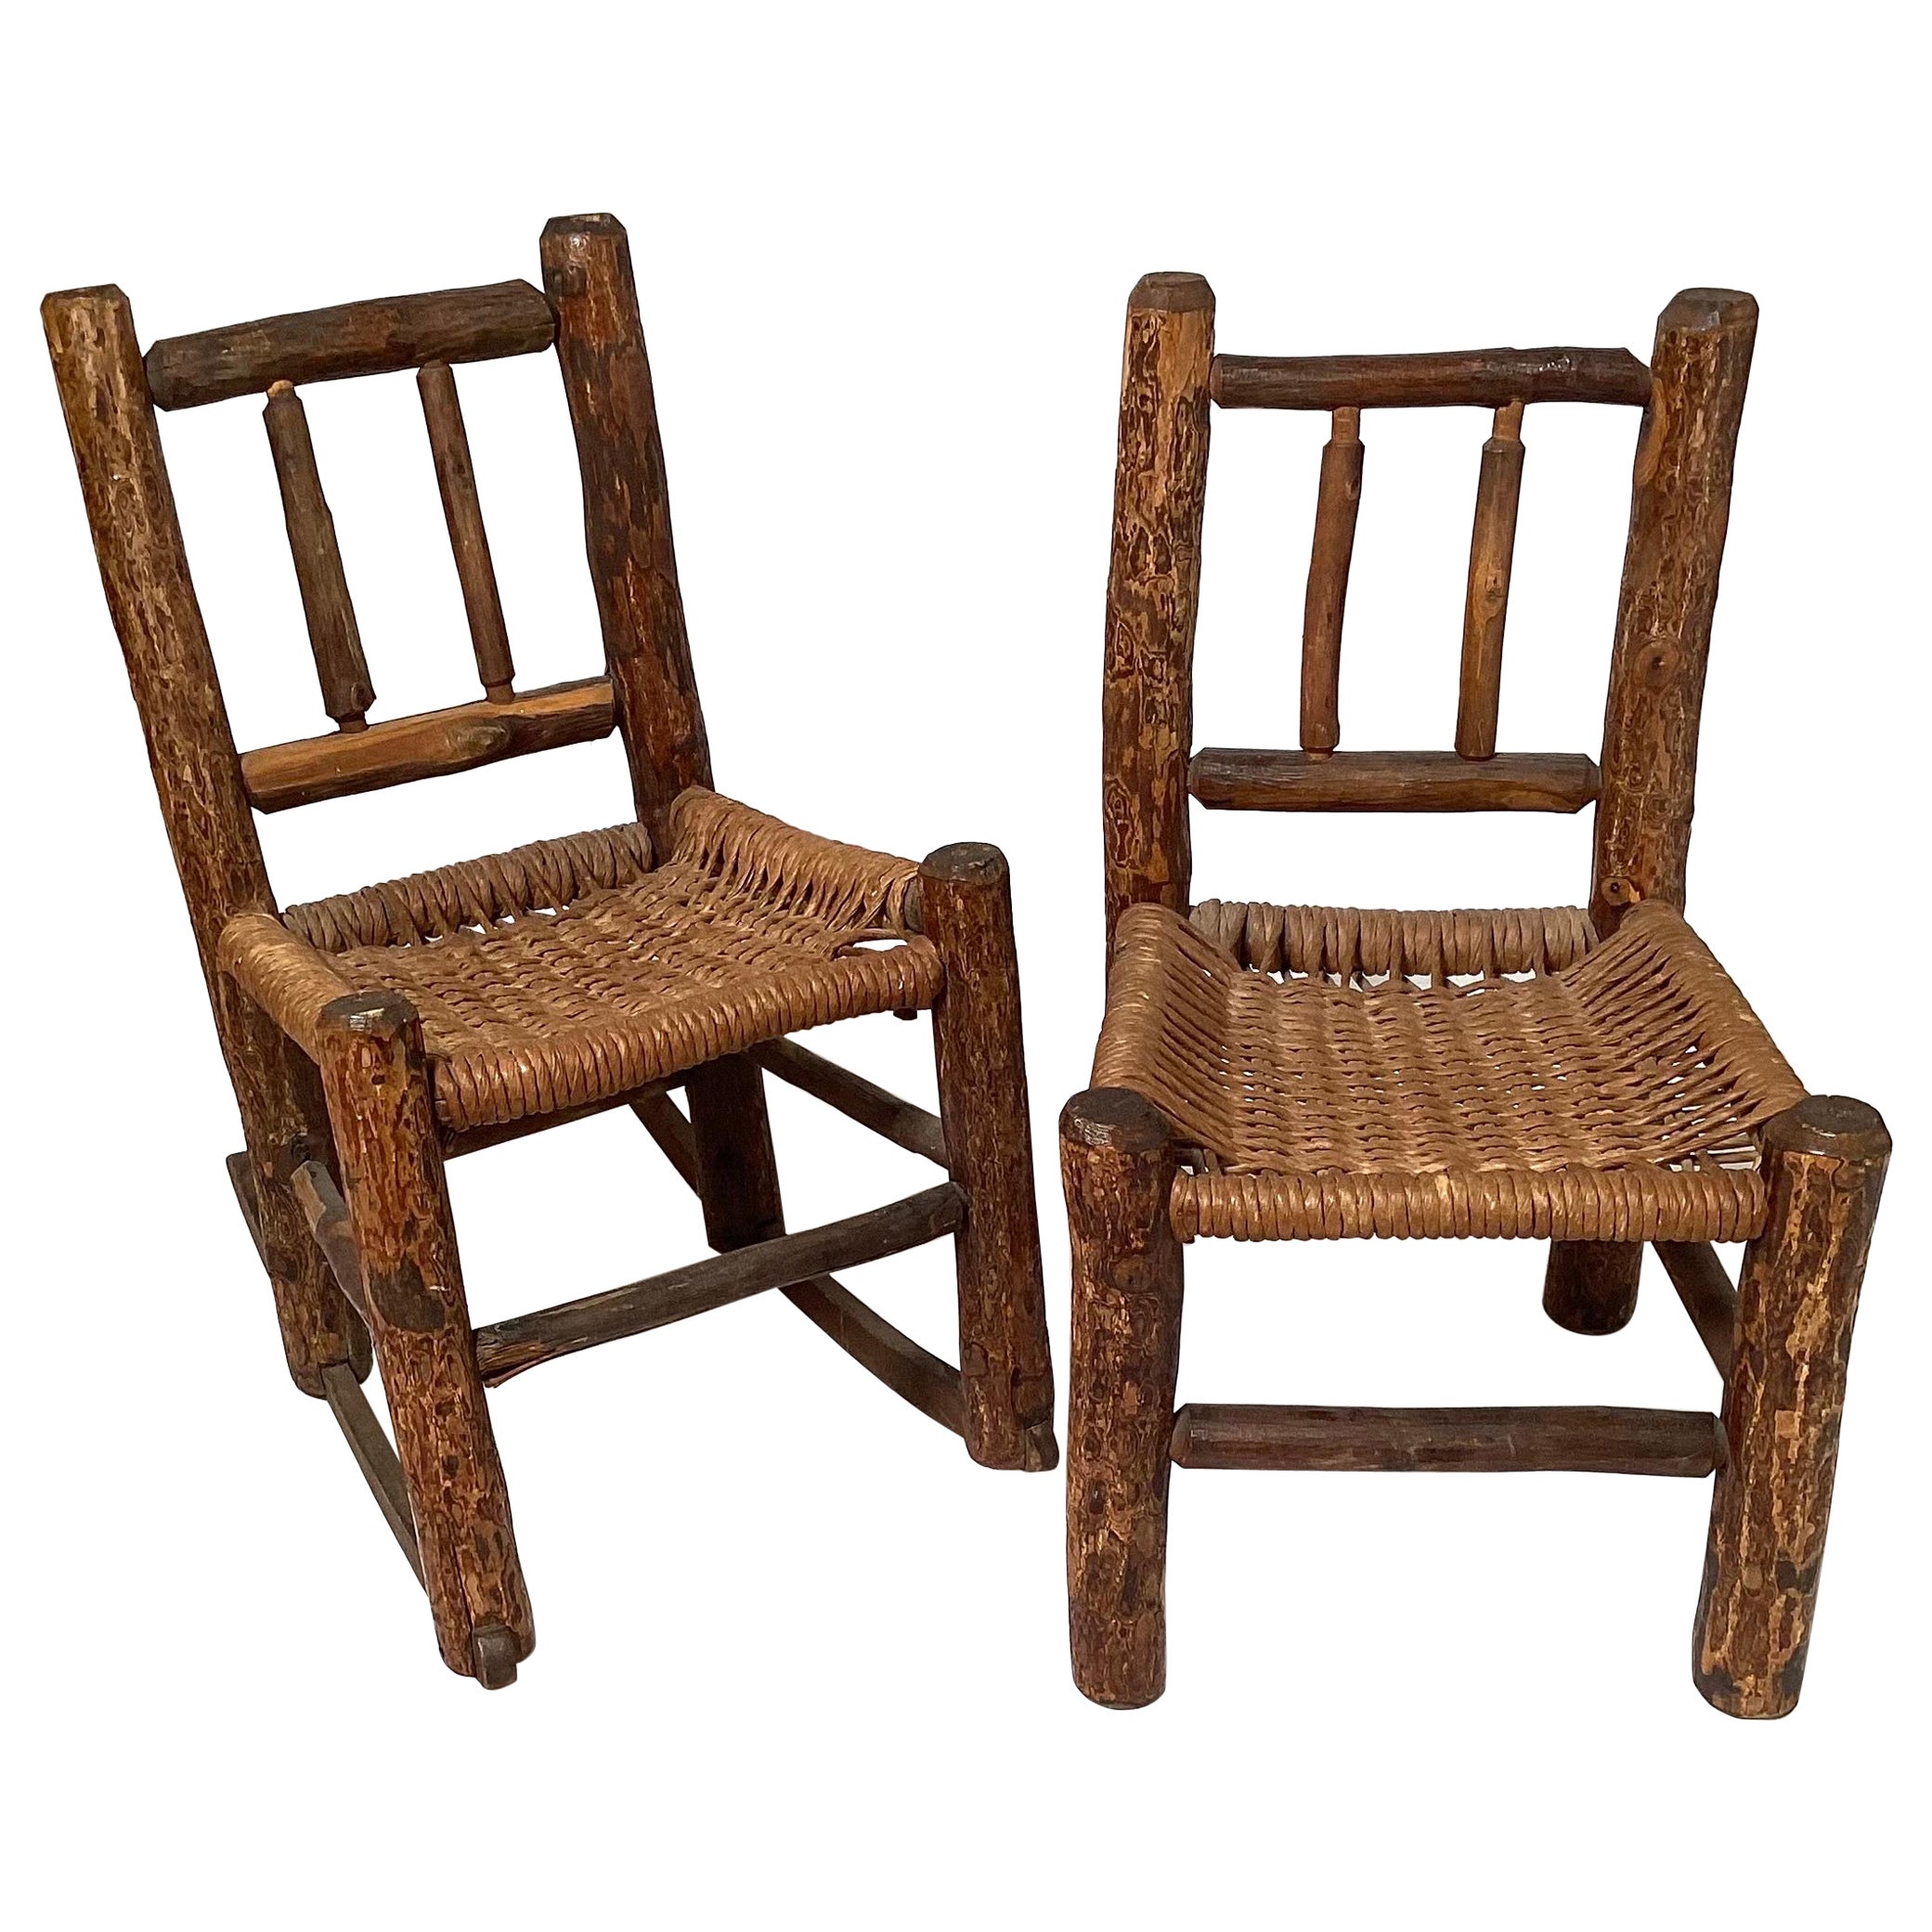 Set of 19th Century Adirondack Children's Chairs